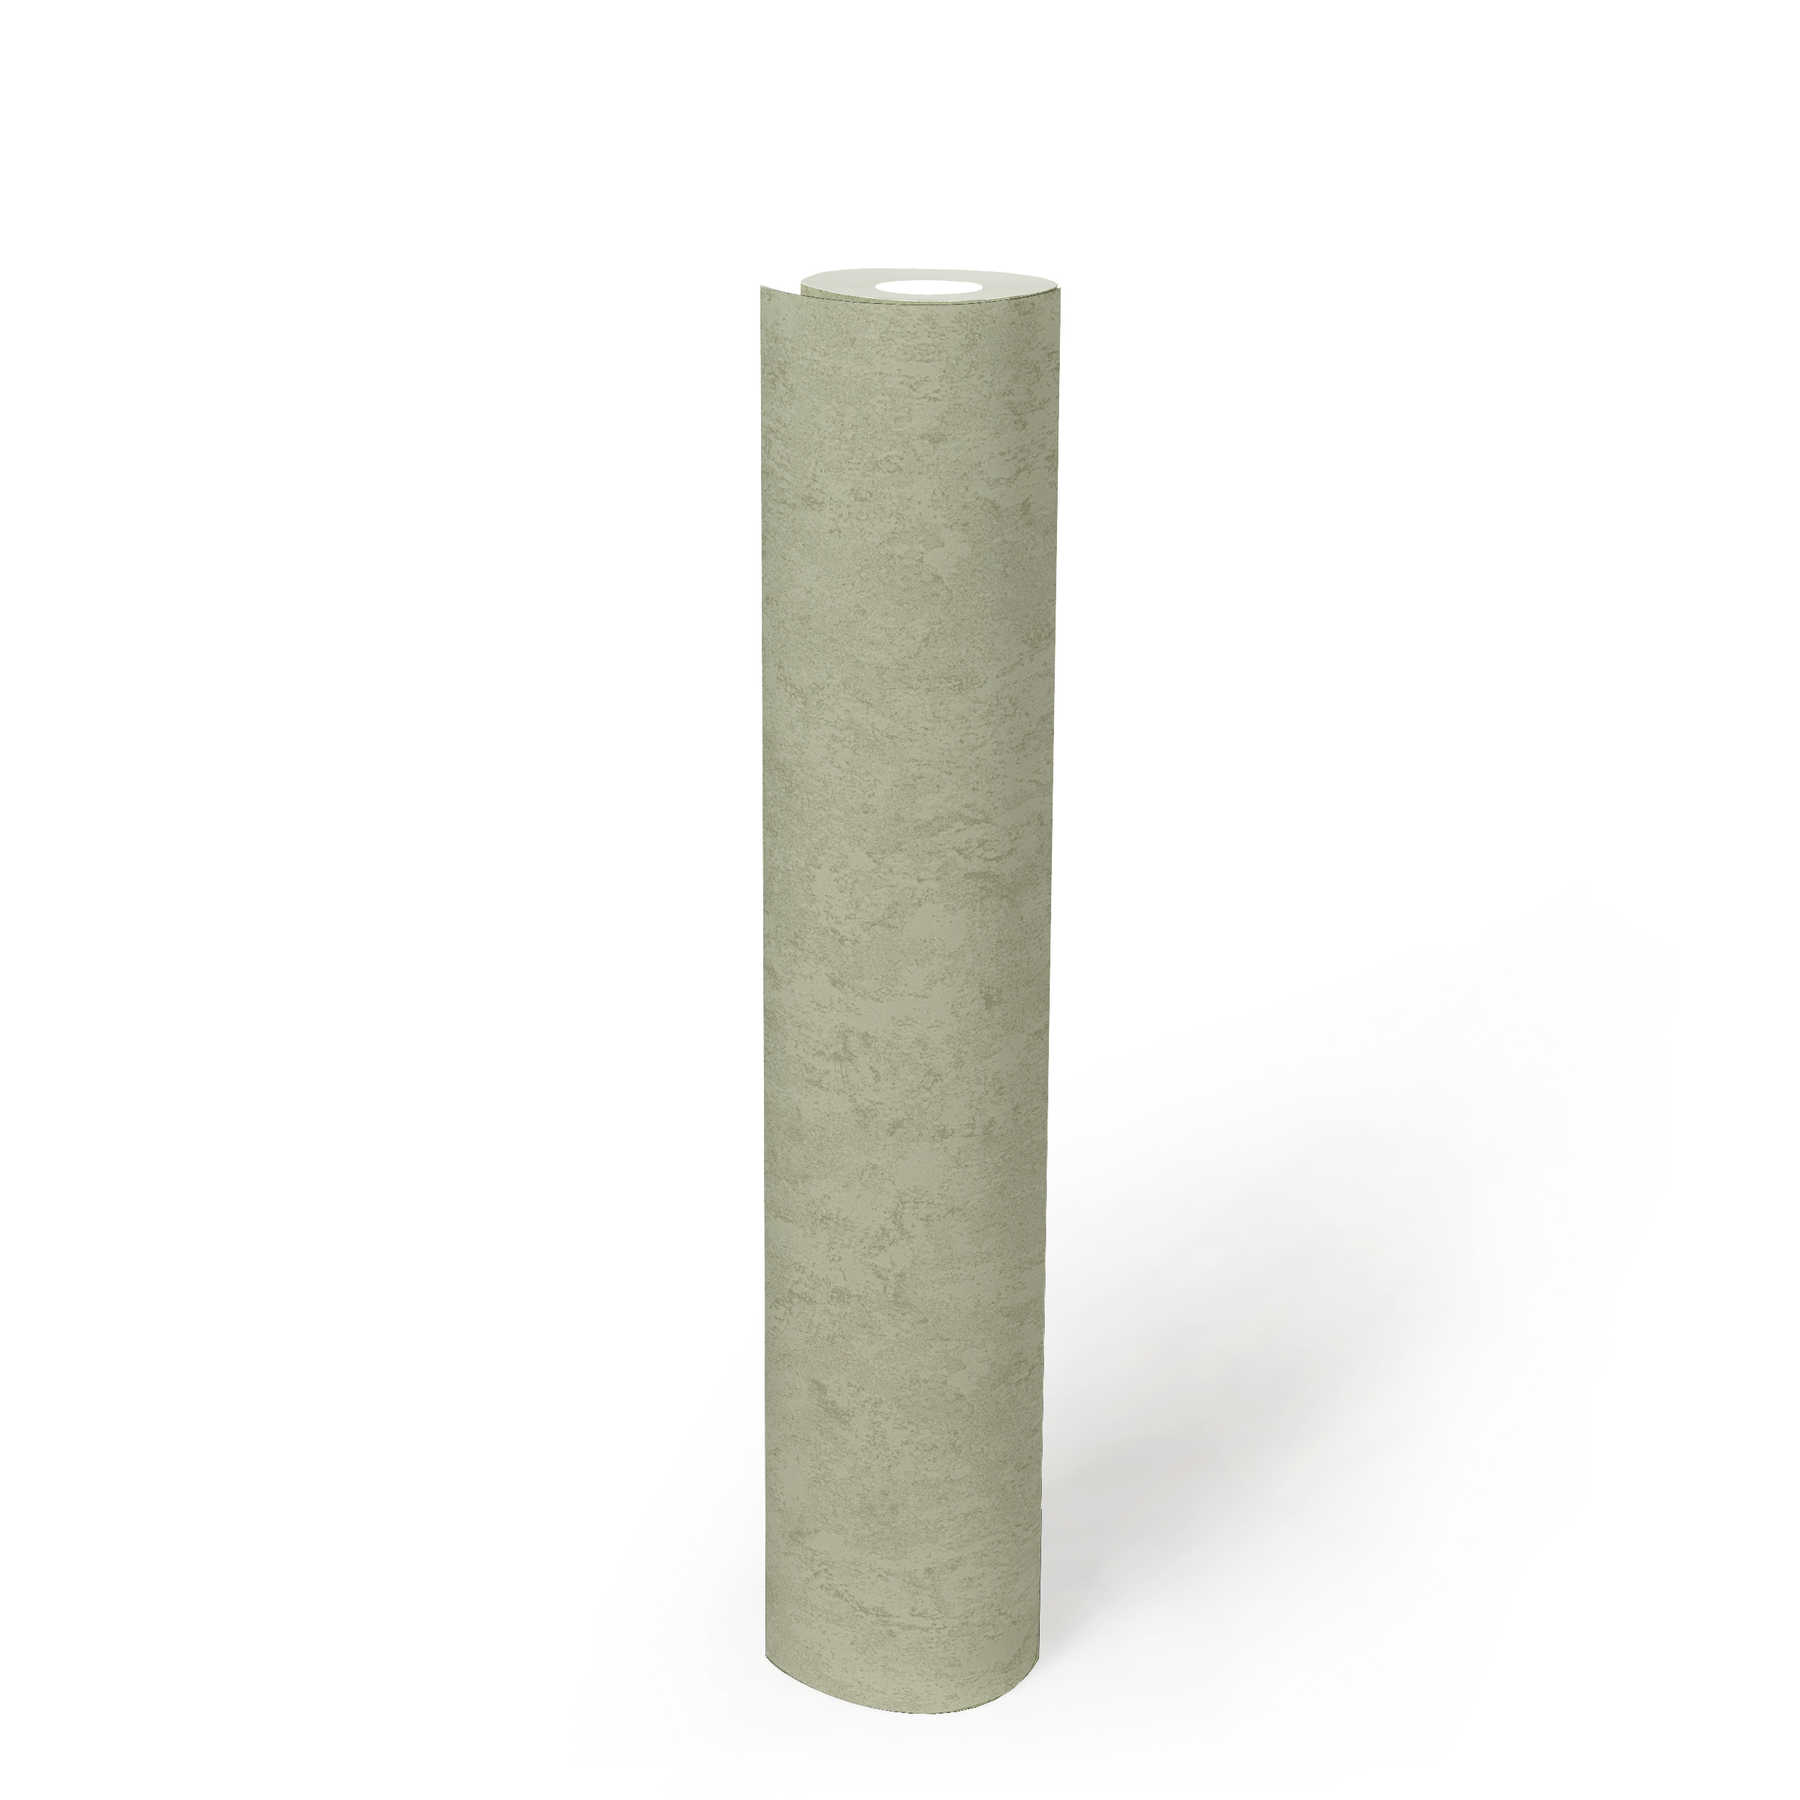             Plain wallpaper plaster look & surface texture - green
        